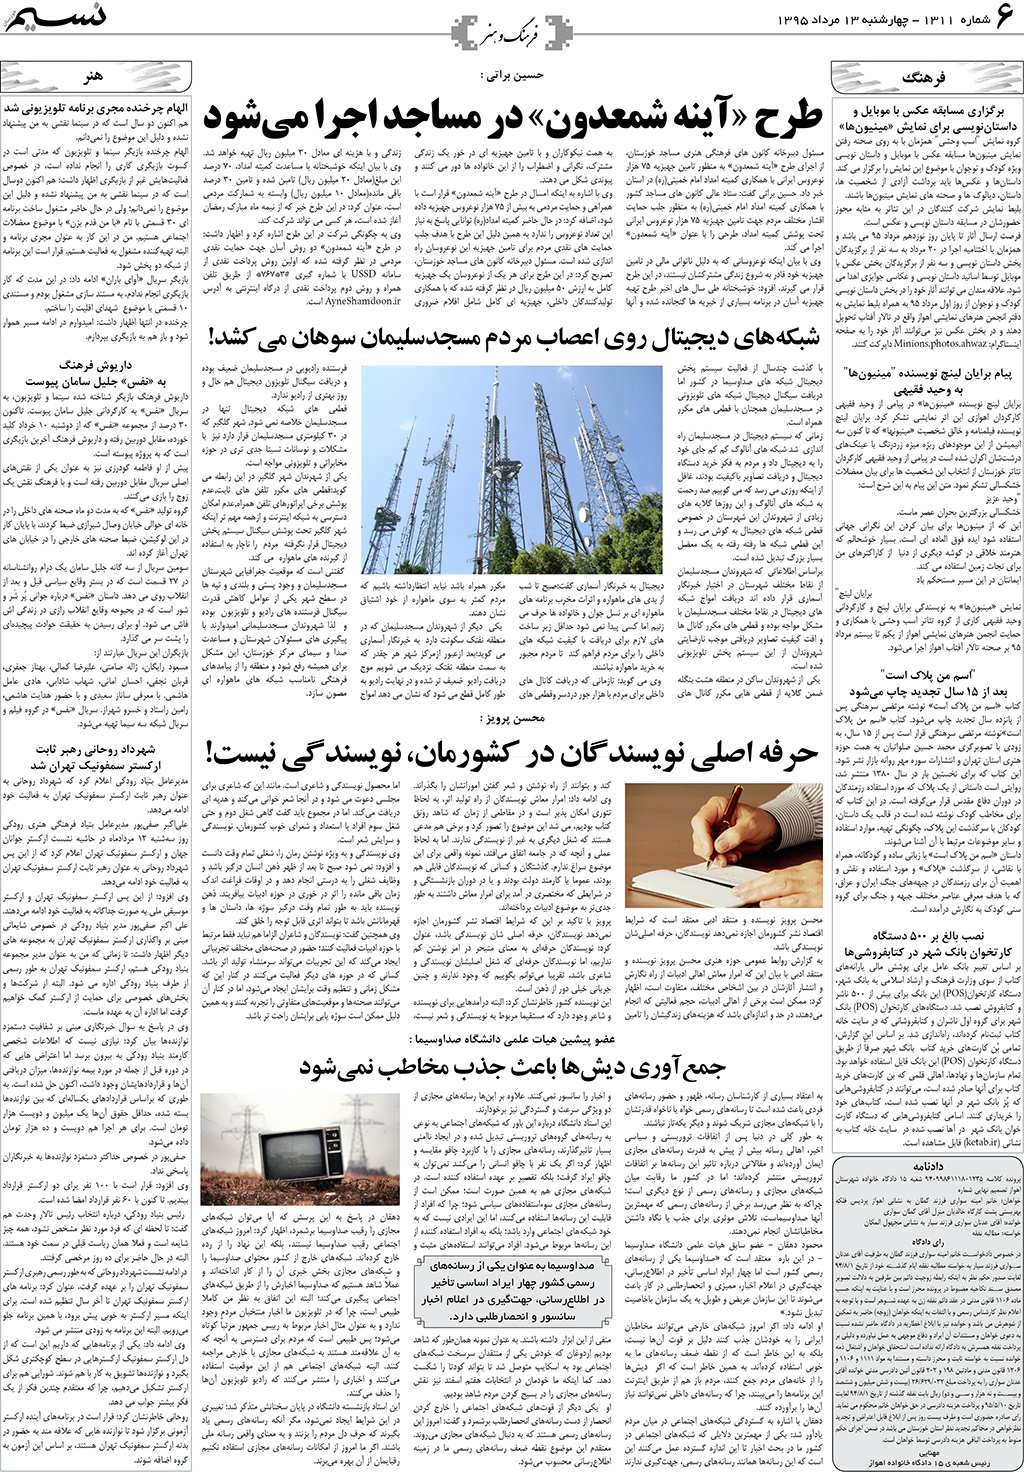 صفحه فرهنگ و هنر روزنامه نسیم شماره 1311